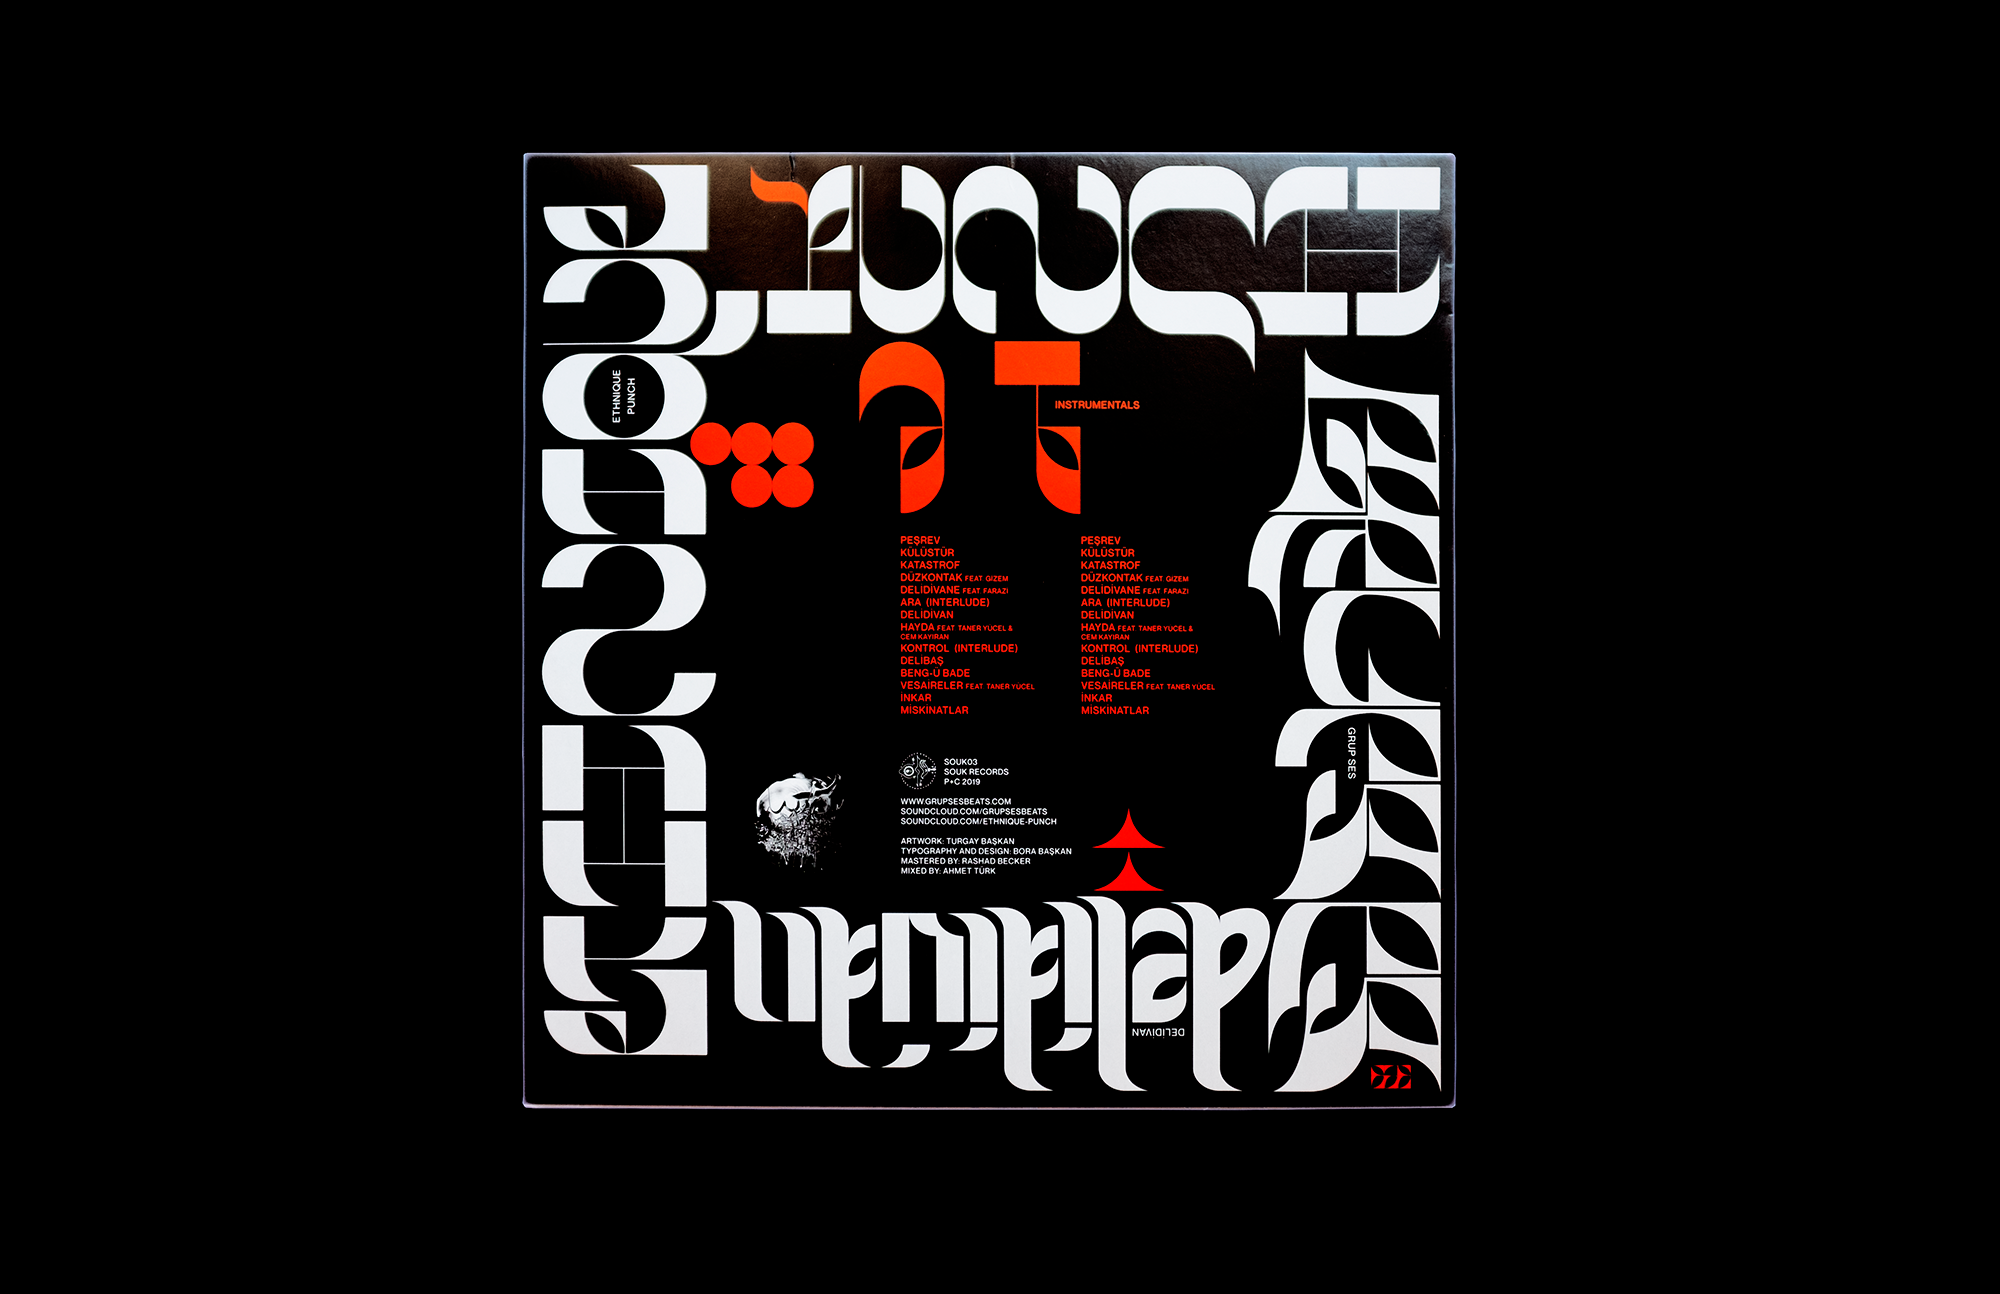 title:GRUP SES & ETHNIQUE PUNCH — DELI DIVAN [12” LP] description:Album cover design. year:2019